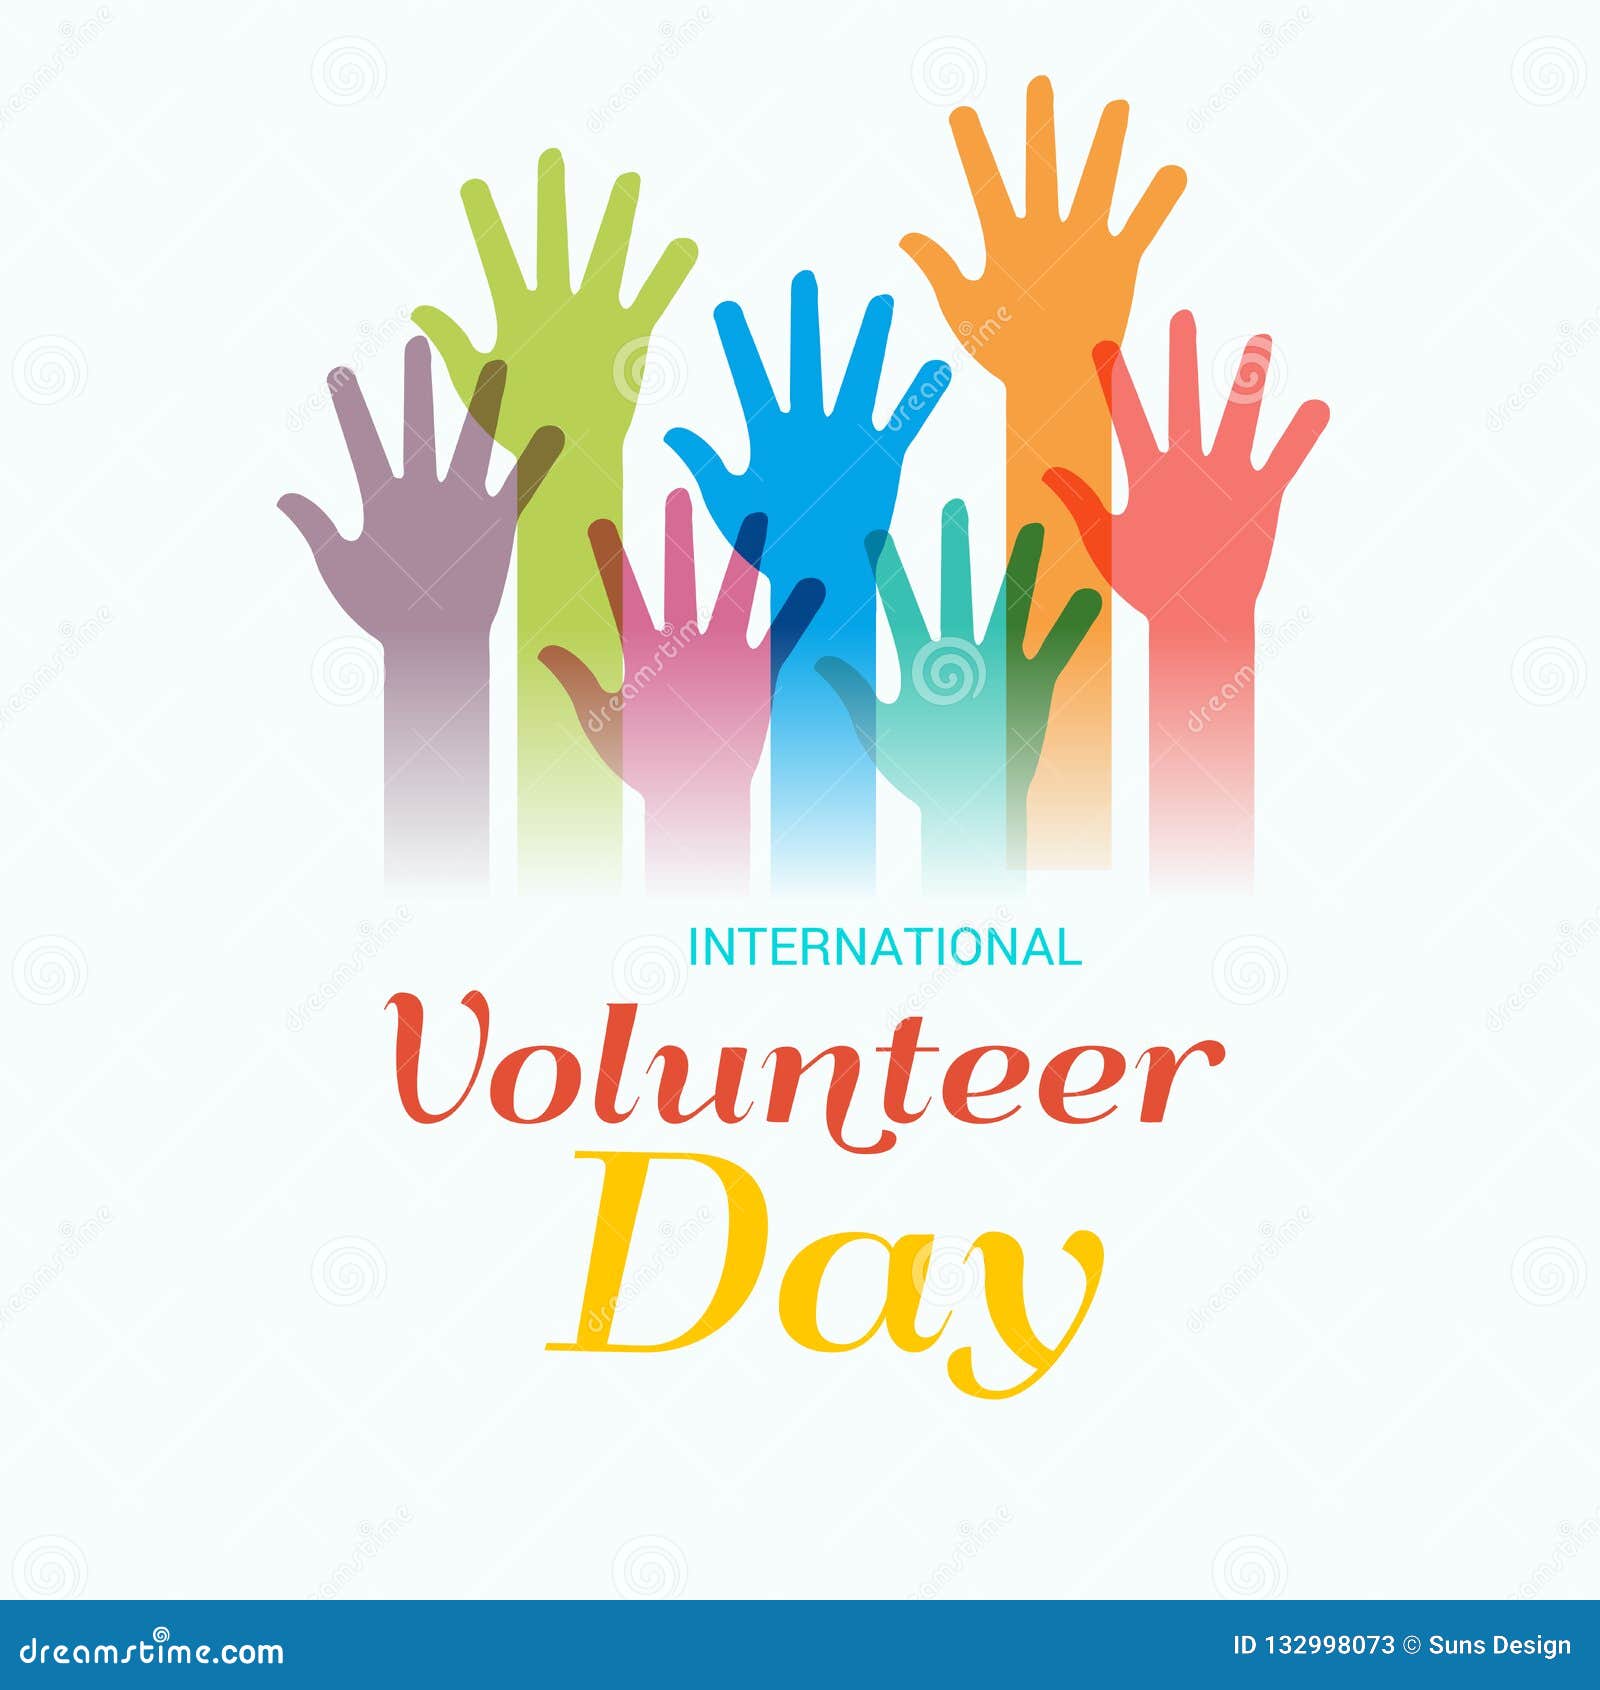 International Volunteer Day Landing Page Template. Volunteers Male